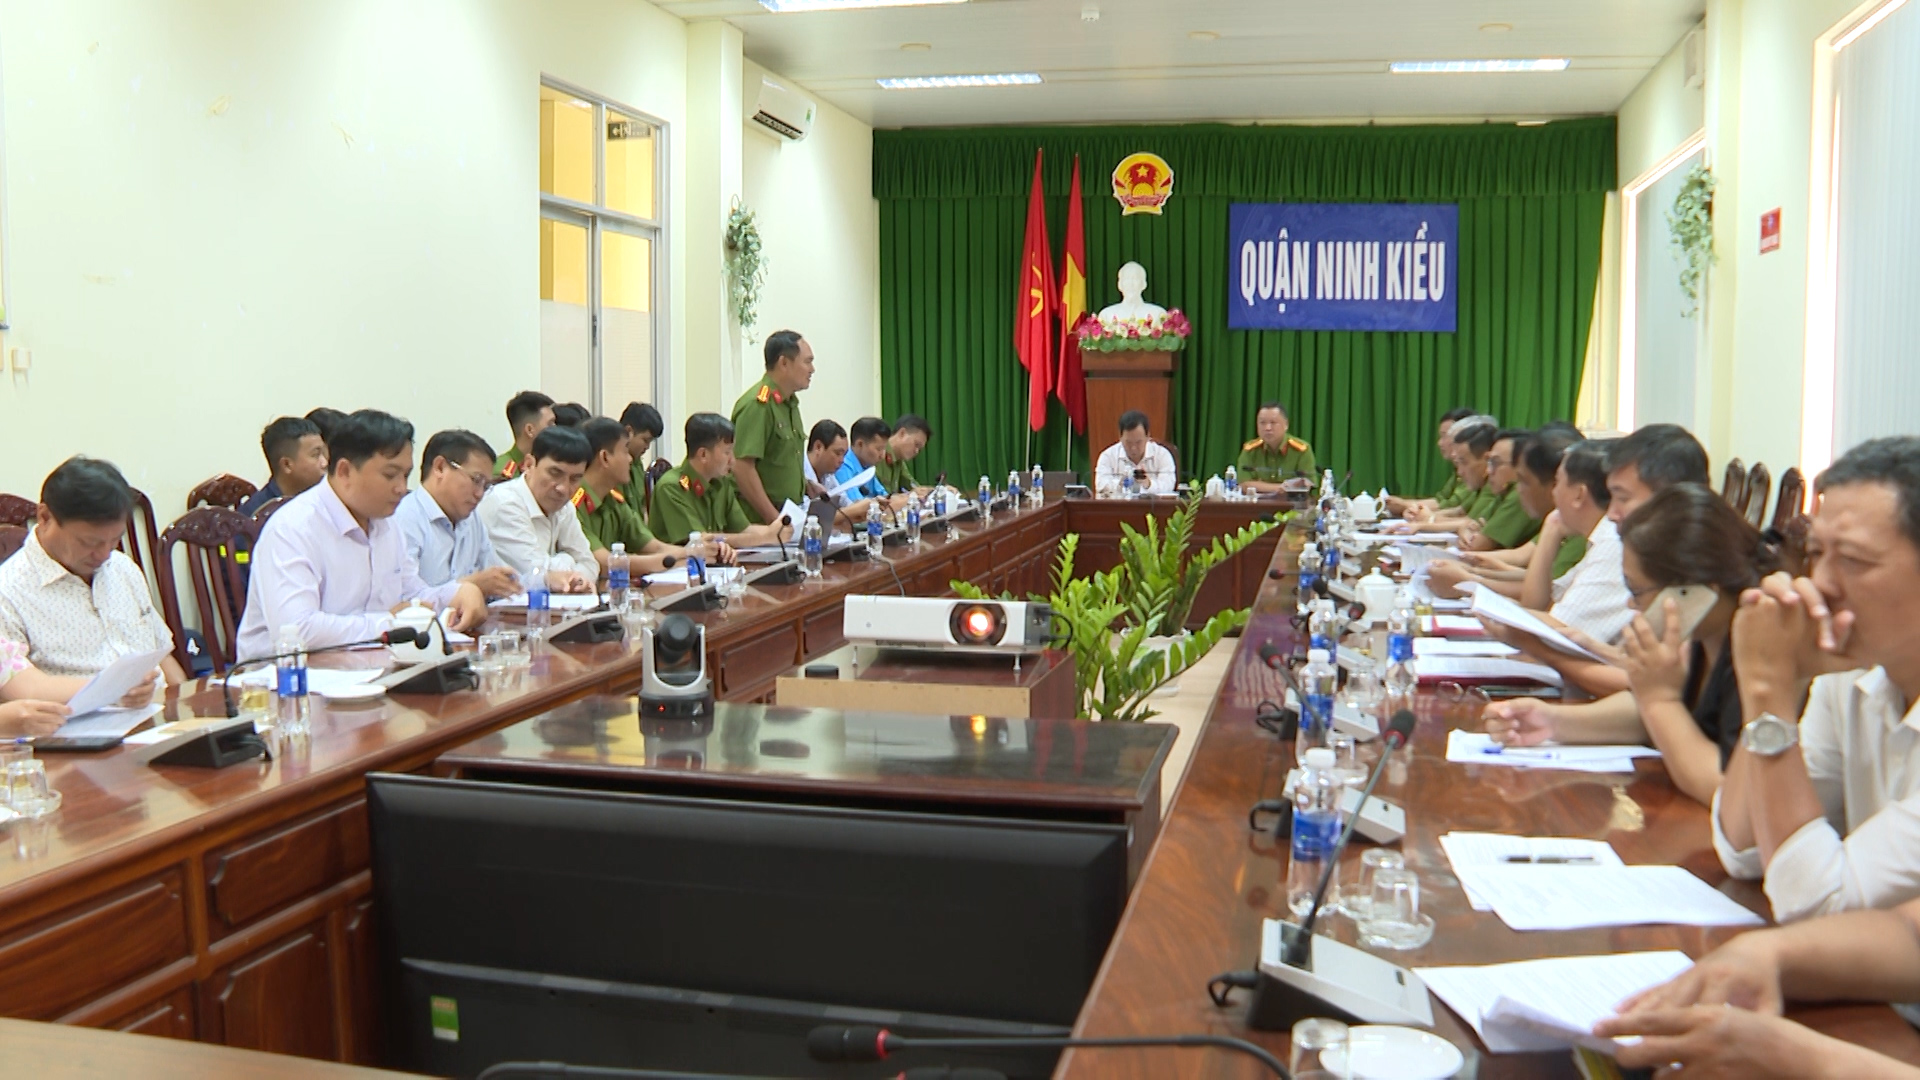 Hình 1: Quận Ninh Kiều tổ chức họp triển khai điều lệ Hội thi nghiệp vụ chữa cháy và cứu nạn cứu hộ “Tổ liên gia an toàn phòng cháy chữa cháy” trên địa địa bàn quận năm 2024